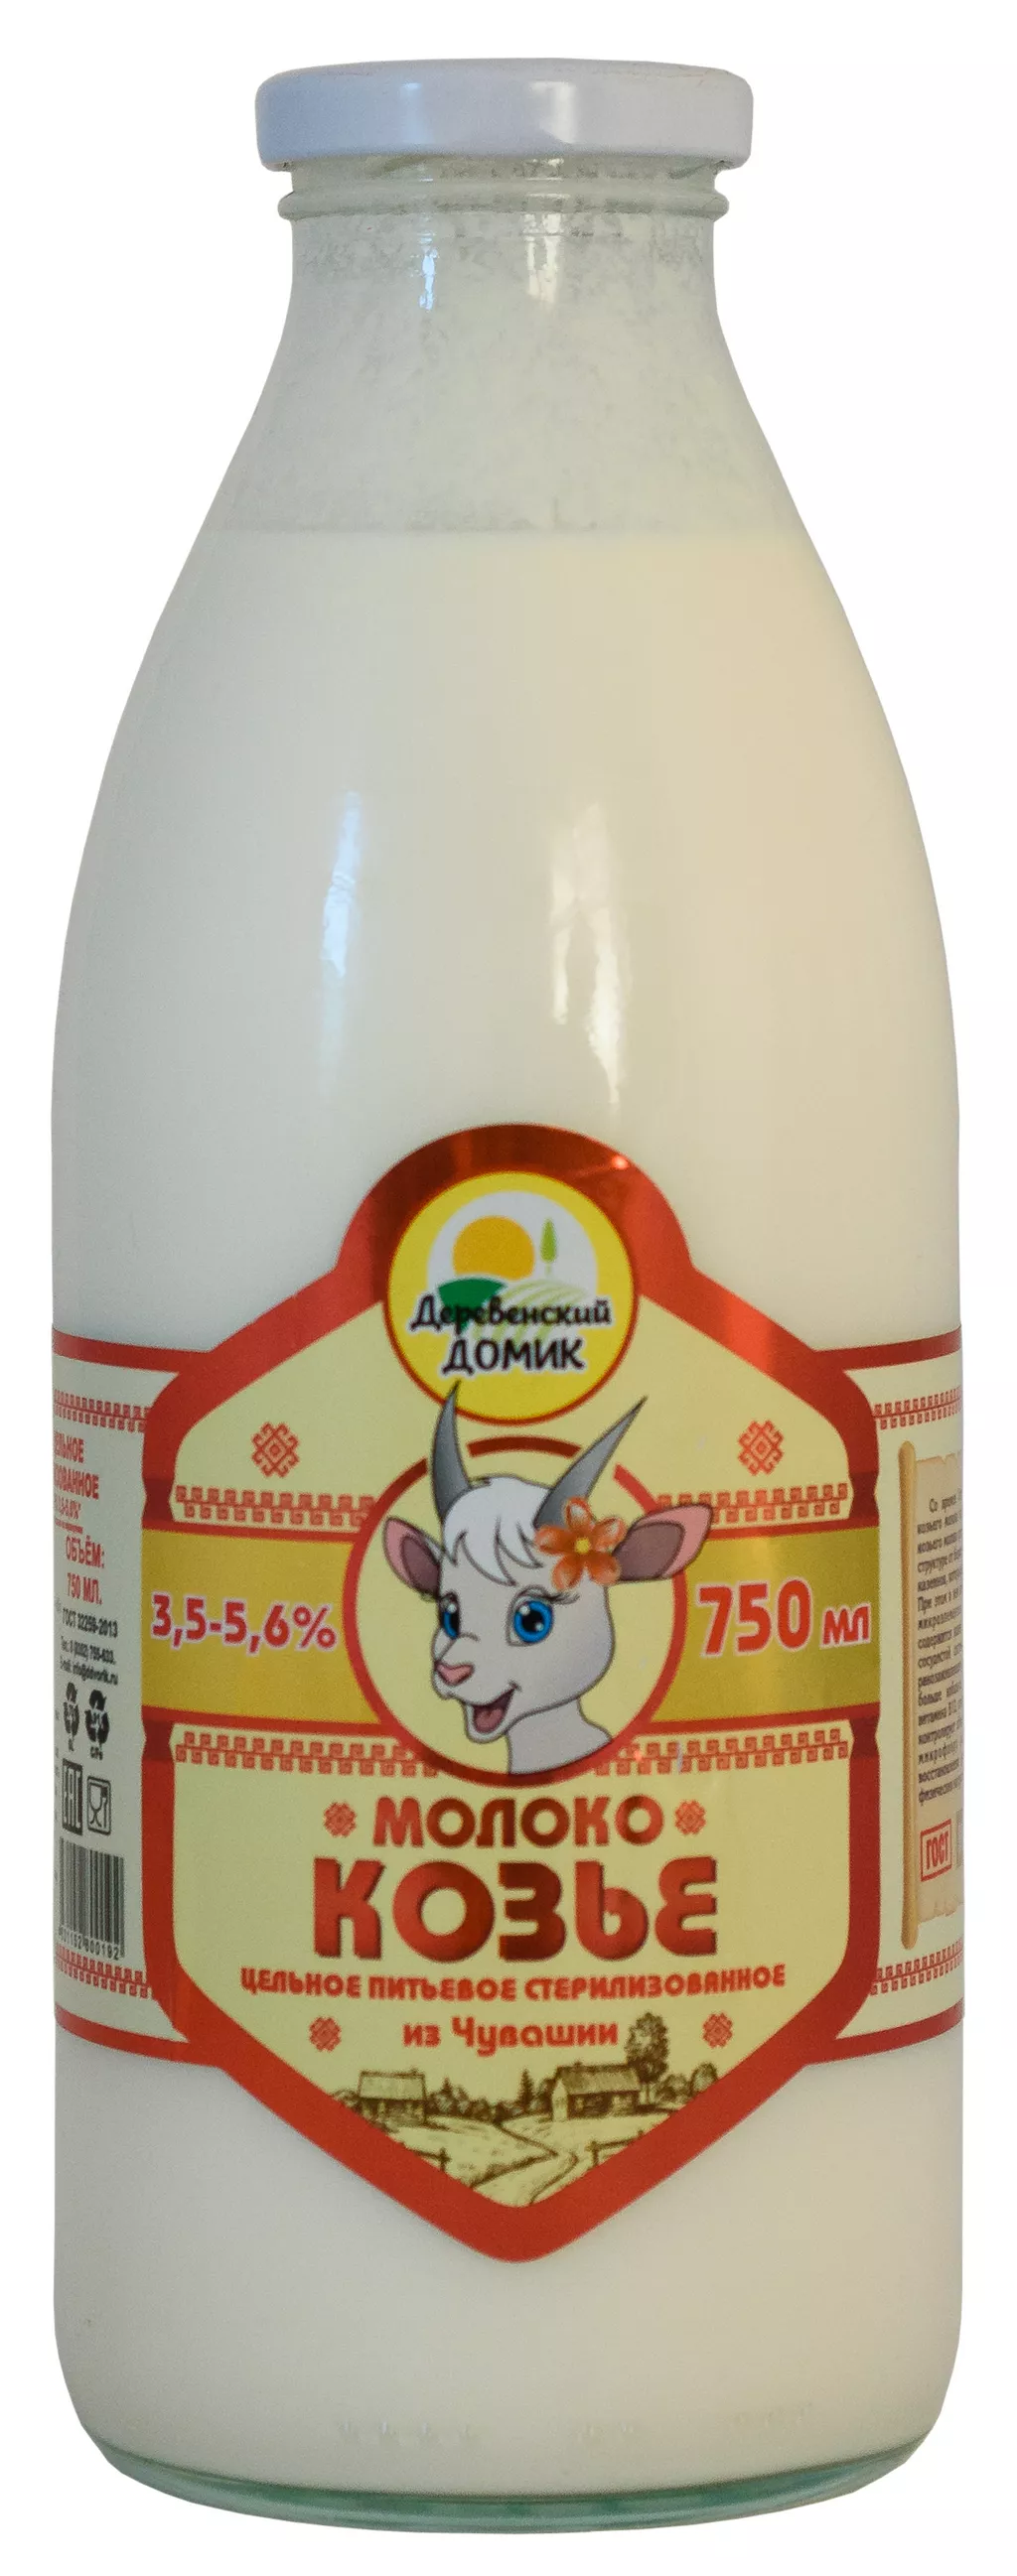  молоко сырое  козье в Чебоксарах и Чувашии 4